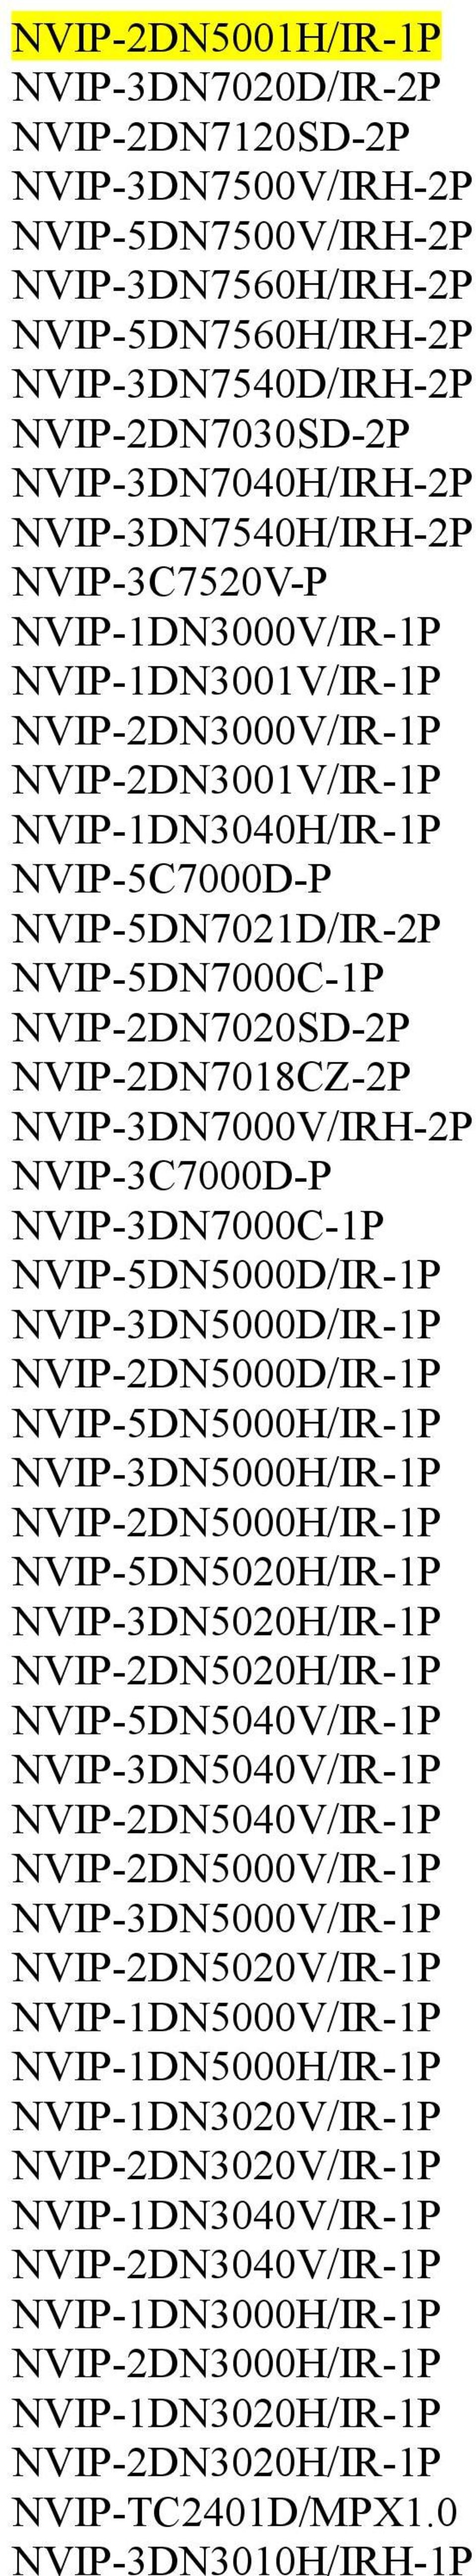 NVIP-5DN7000C-1P NVIP-2DN7020SD-2P NVIP-2DN7018CZ-2P NVIP-3DN7000V/IRH-2P NVIP-3C7000D-P NVIP-3DN7000C-1P NVIP-5DN5000D/IR-1P NVIP-3DN5000D/IR-1P NVIP-2DN5000D/IR-1P NVIP-5DN5000H/IR-1P